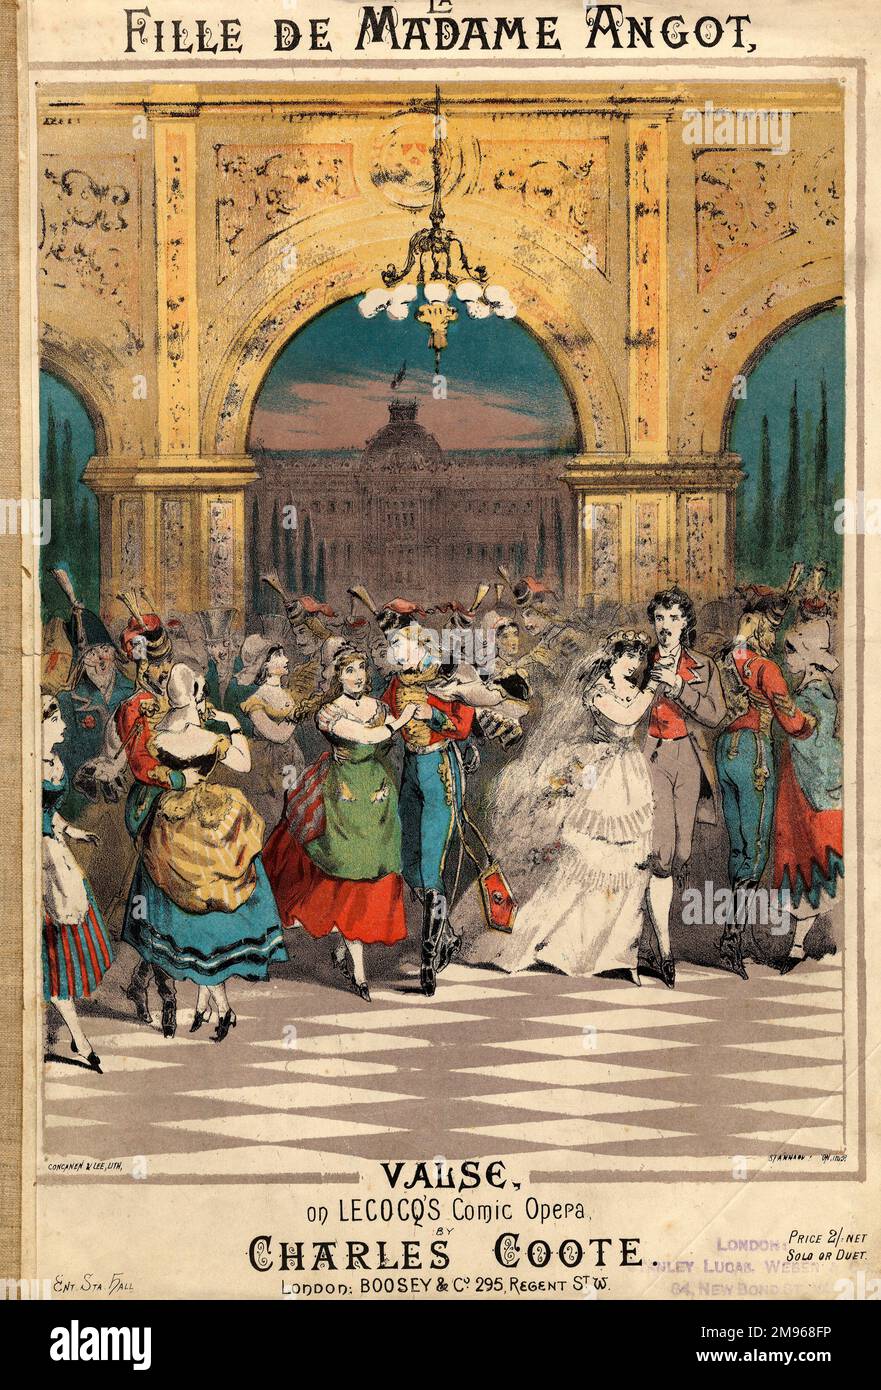 Copertina musicale per la Fille de Madame Angot Valse, valzer reso popolare dall'opera comica di Charles Lecocq (1832-1918), la Fille de Madame Angot, eseguita per la prima volta nel 1872. Il valzer dell'opera è stato qui arrangiato da Charles Coote, probabilmente per pianoforte (solista e duetto). Viene raffigurata una folla di persone vestita con colori vivaci, che si snode intorno al palco -- alcuni di loro sono Hussars in uniforme. L'opera fu allestita alla fine del 1790s, subito dopo la Rivoluzione francese. Foto Stock